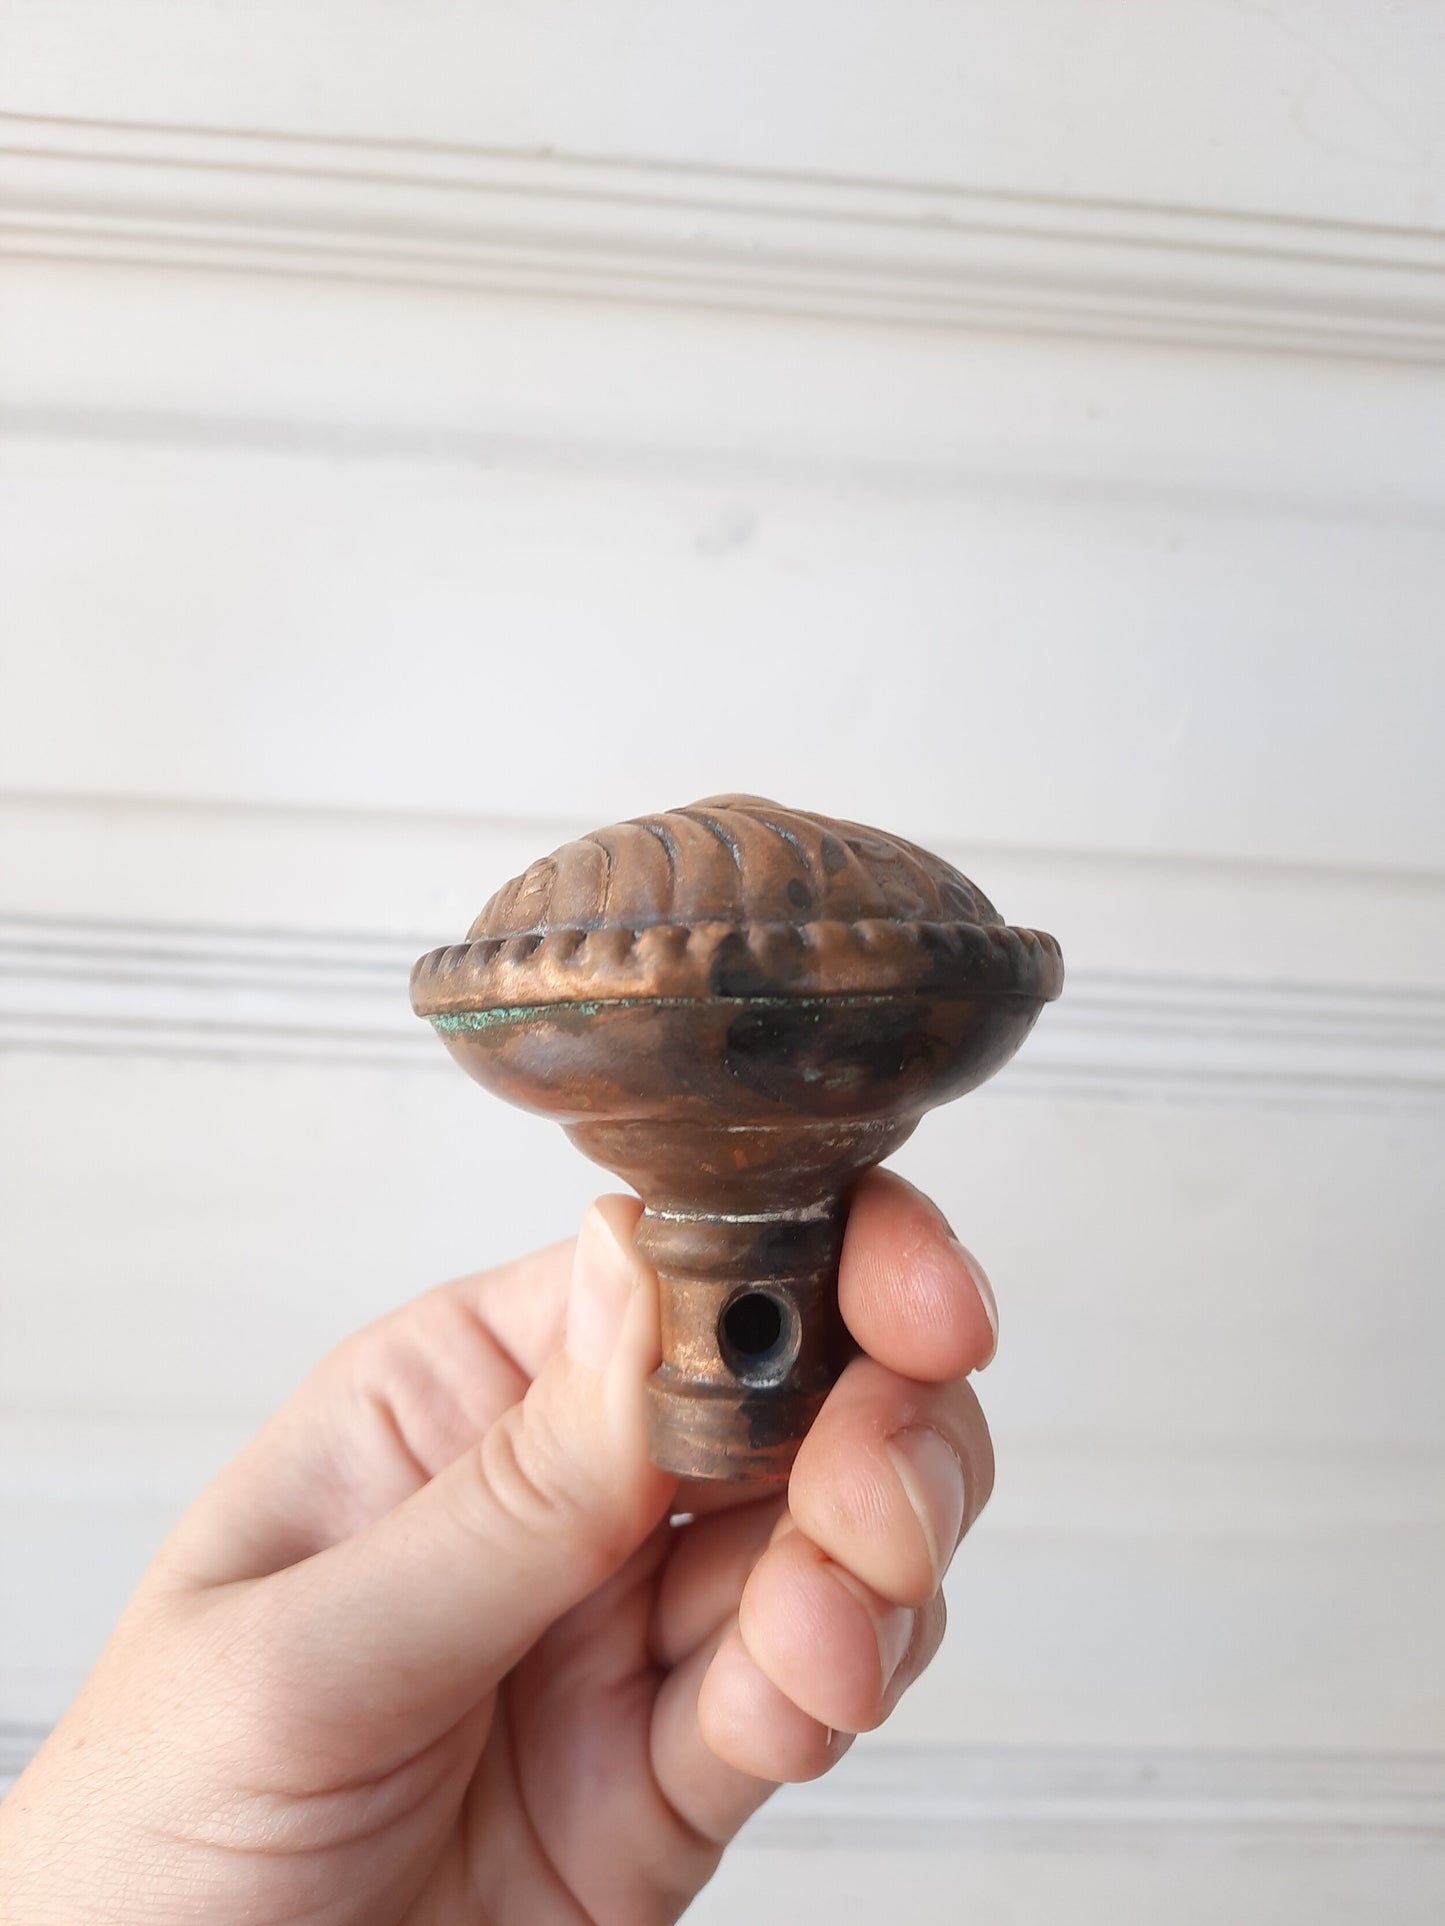 Roanoke Antique Brass Doorknob, Ornate Victorian Stamped Bronze Door Knob